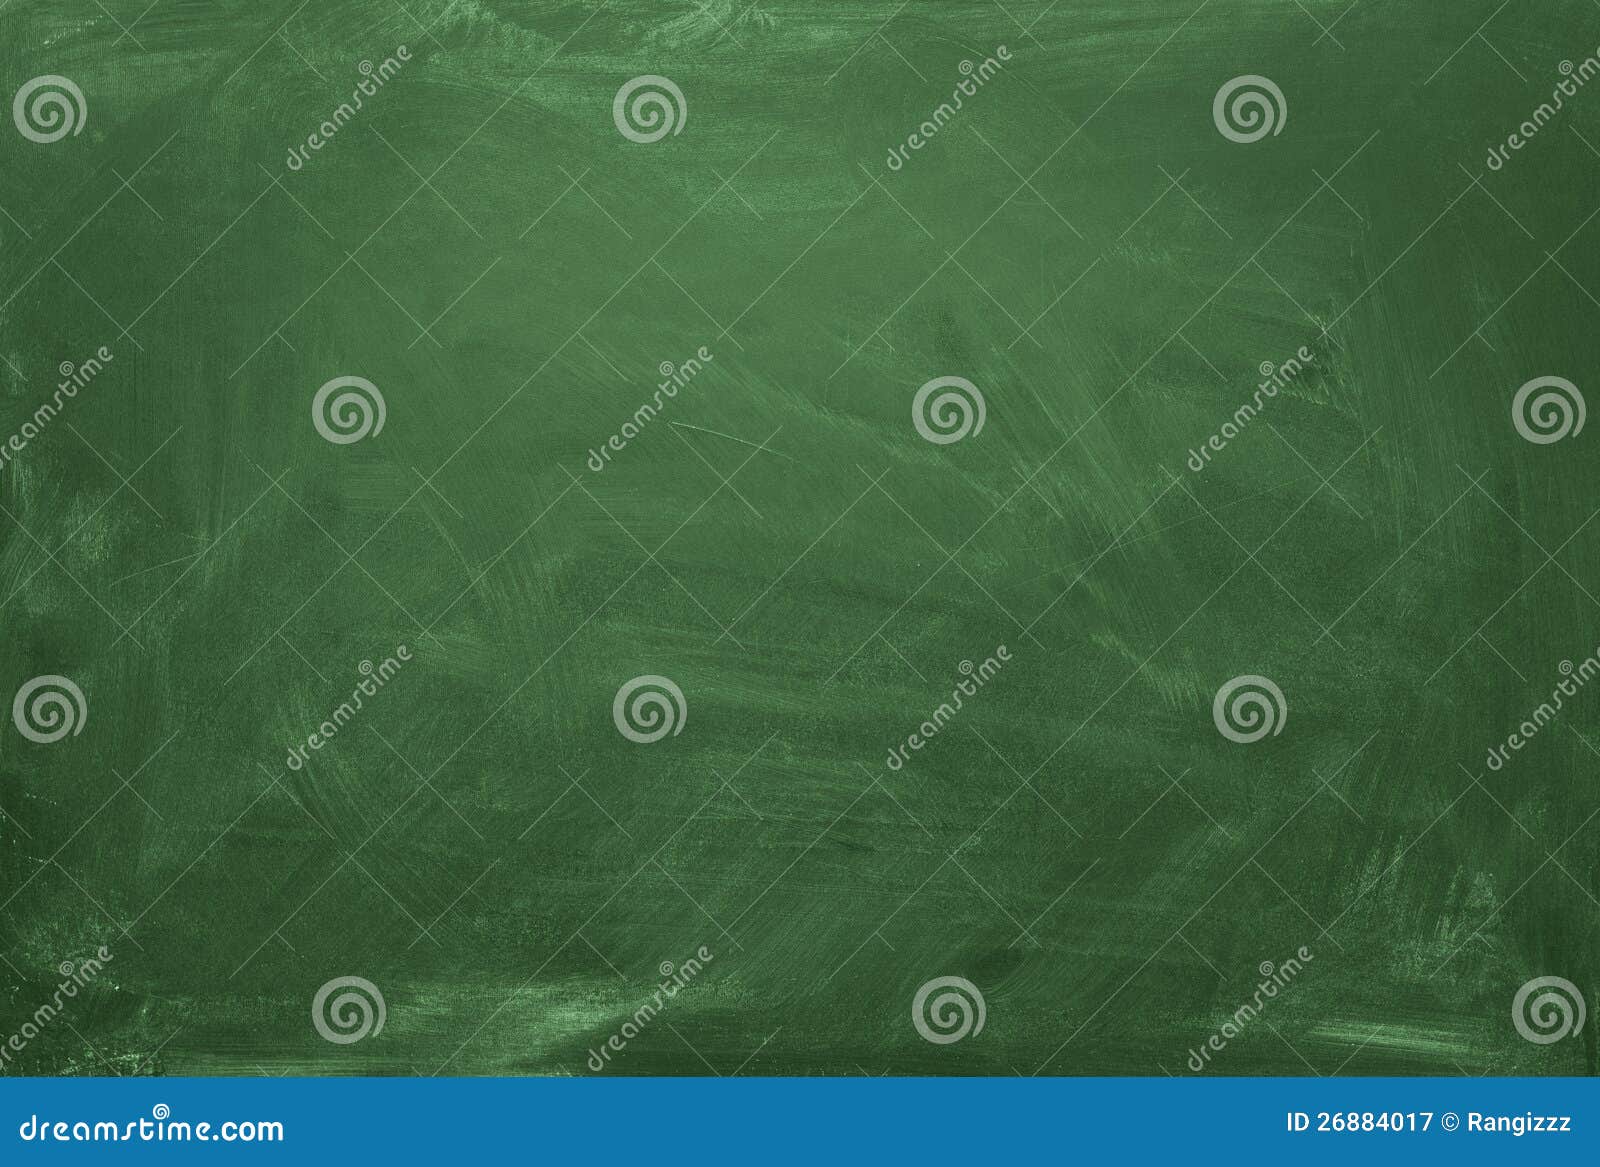 blank green chalkboard